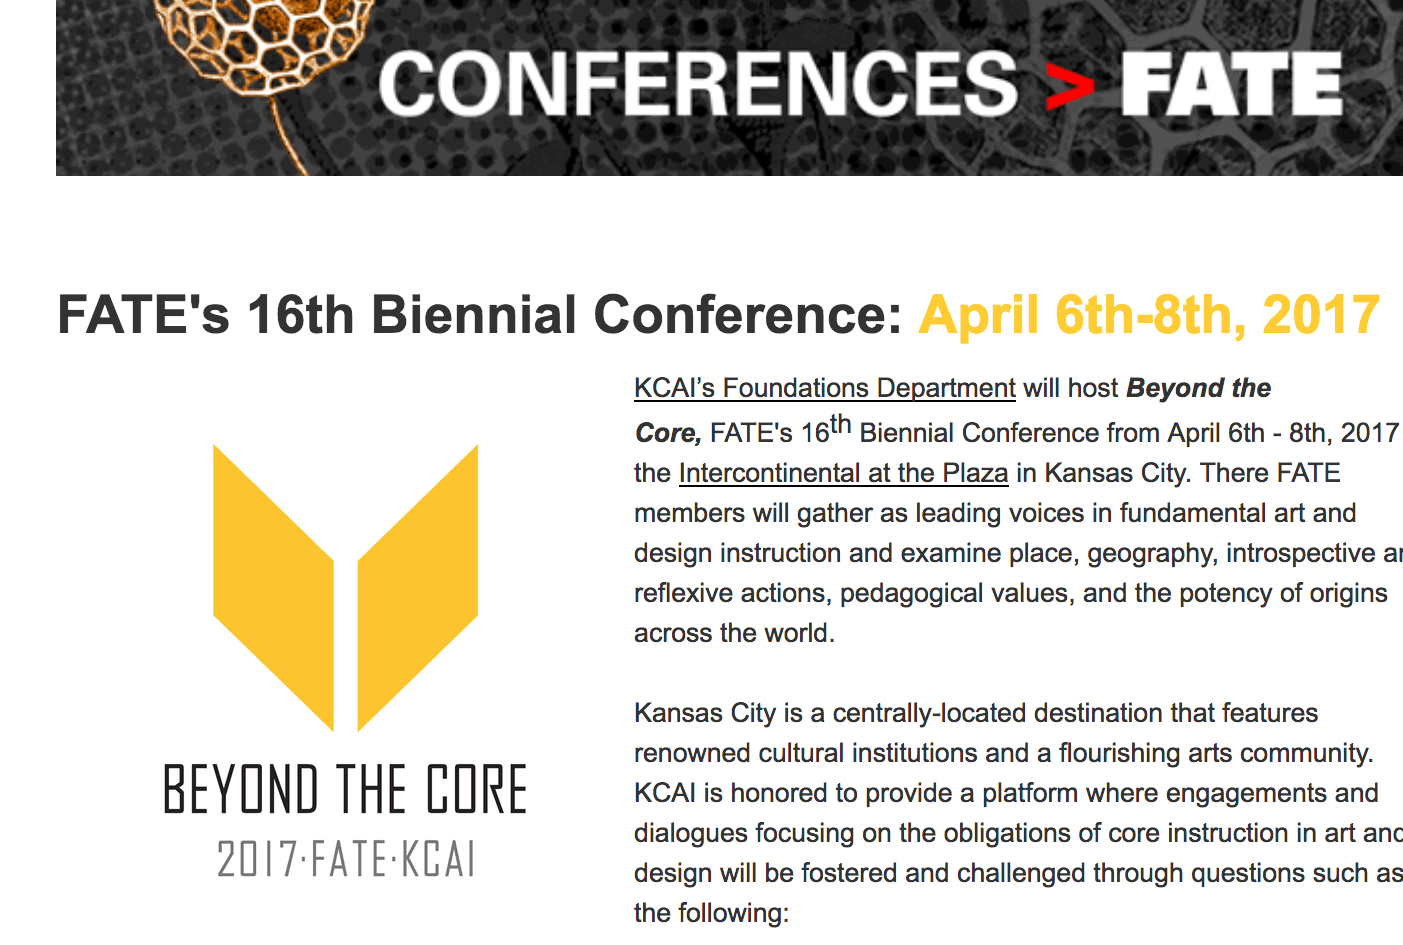 Conference details